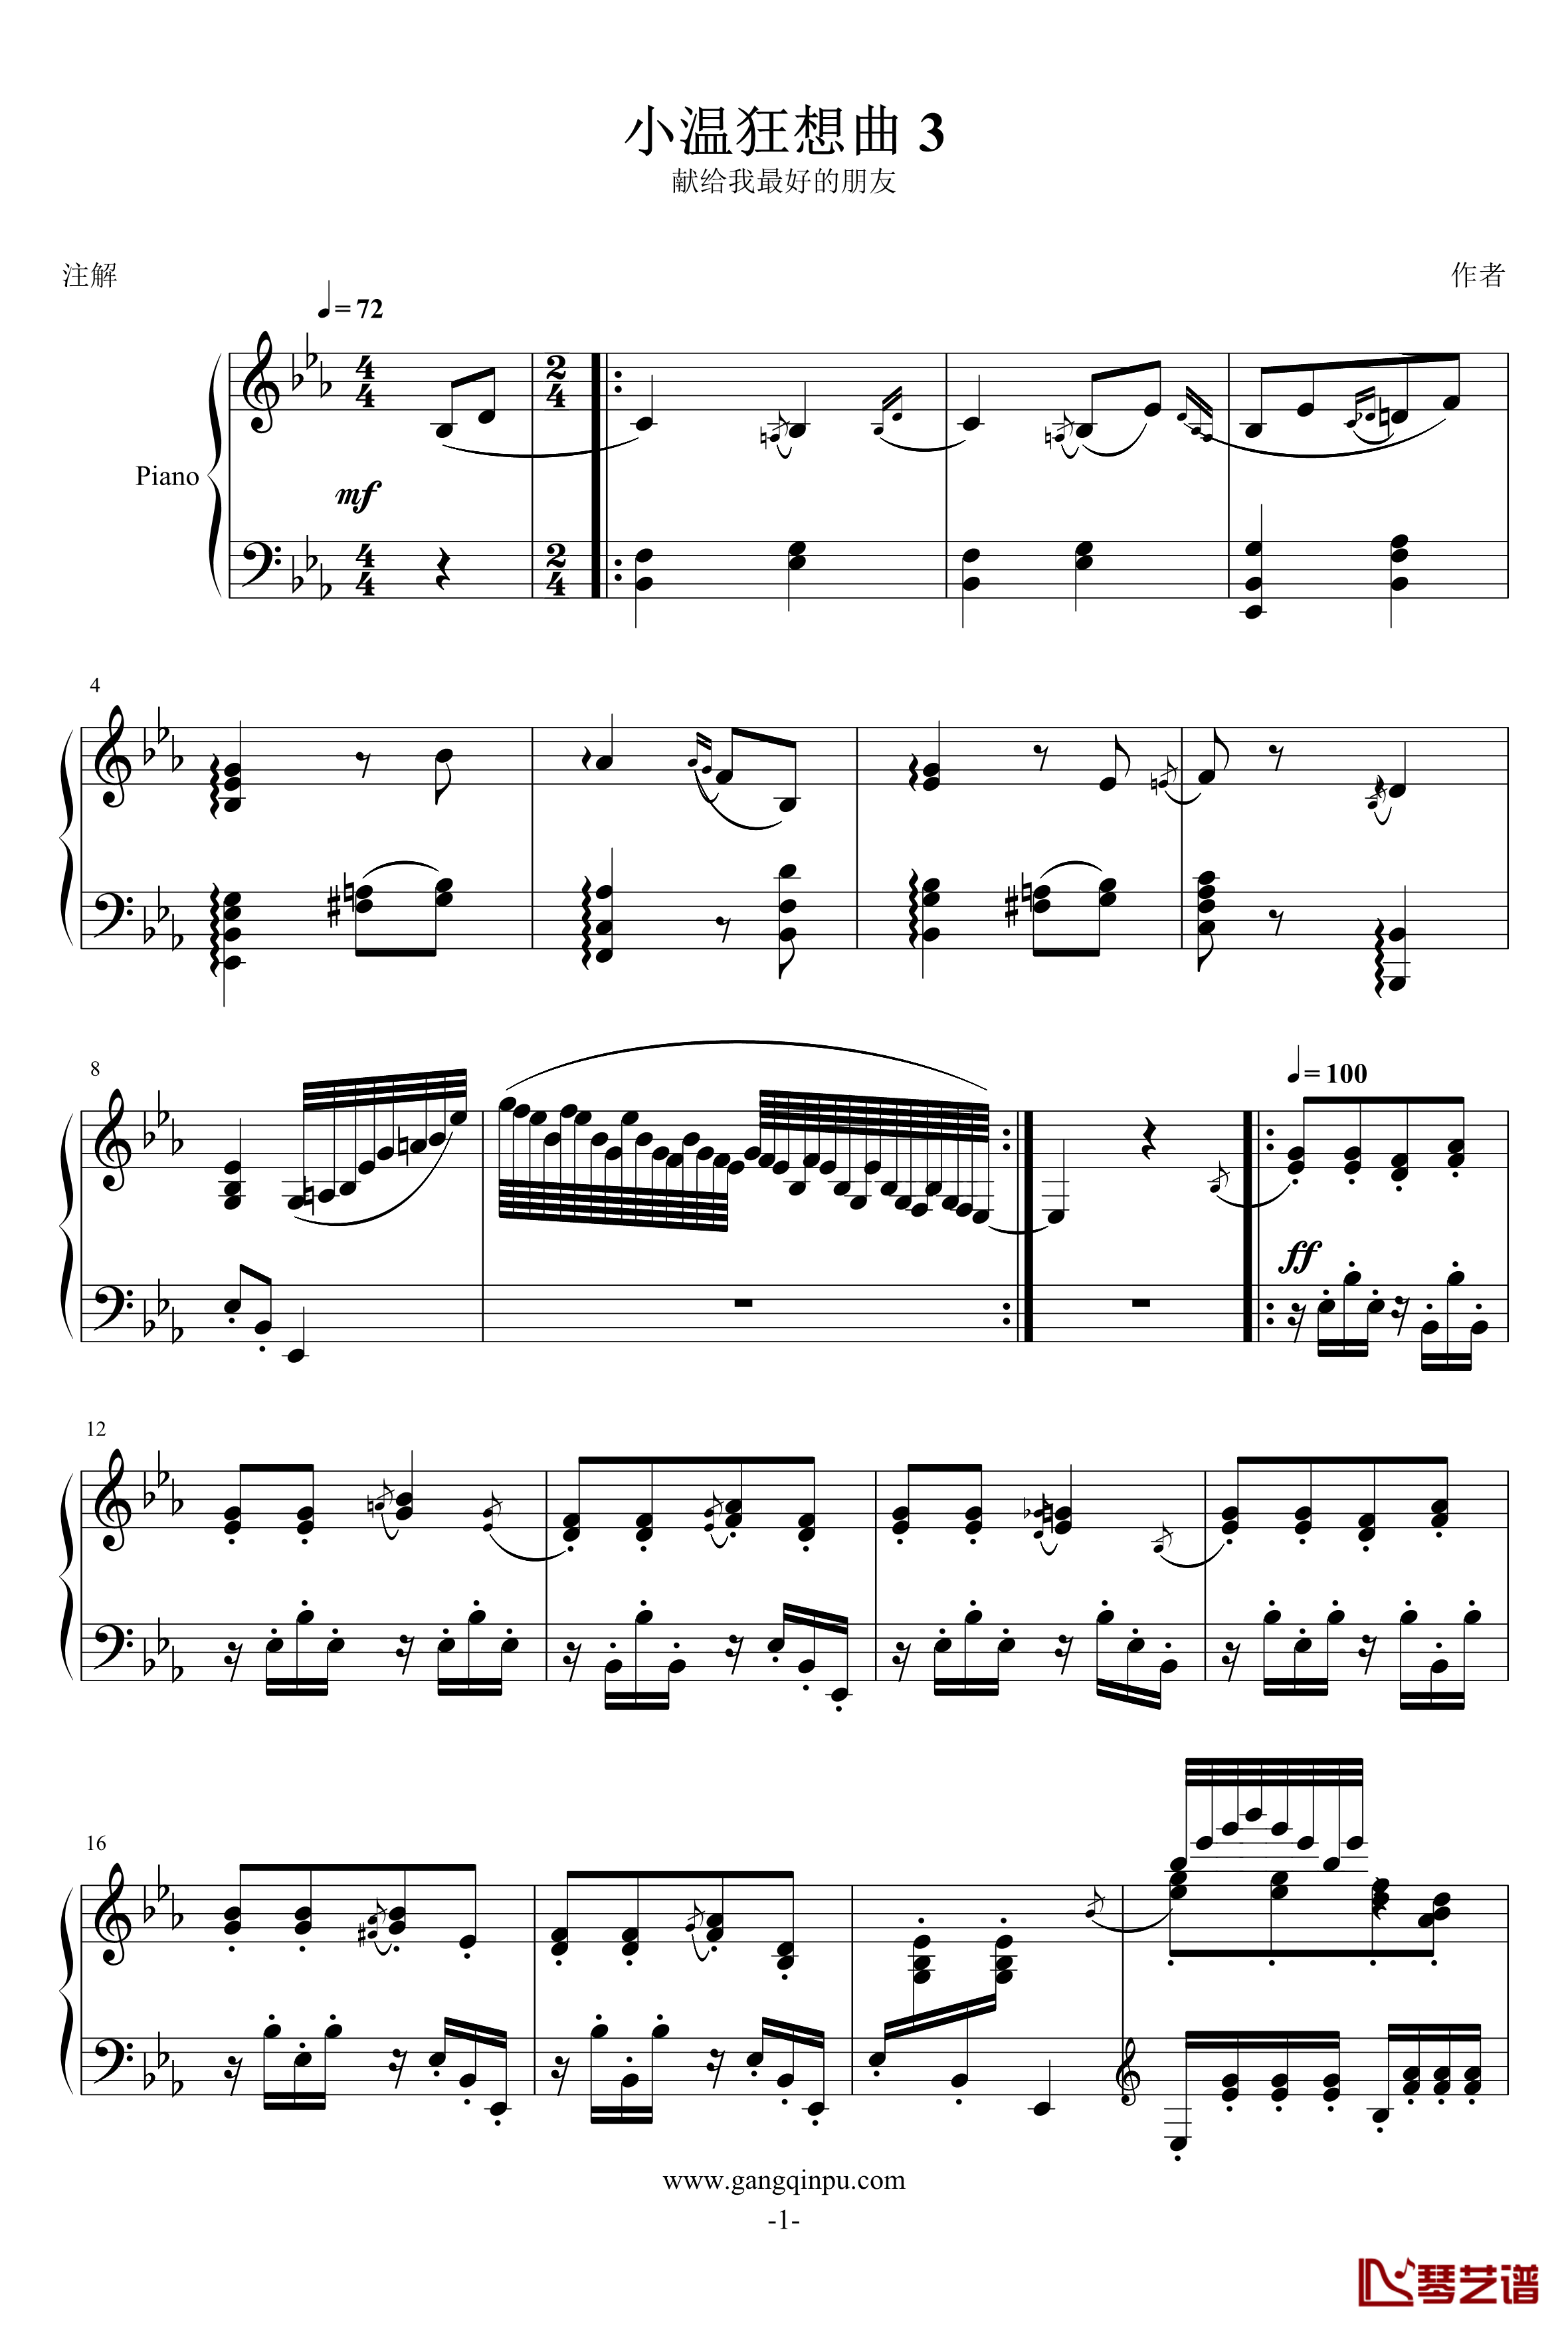 小温狂想曲 3钢琴谱—具有匈牙利狂想曲风格的一曲。—我的代表作-一个球1